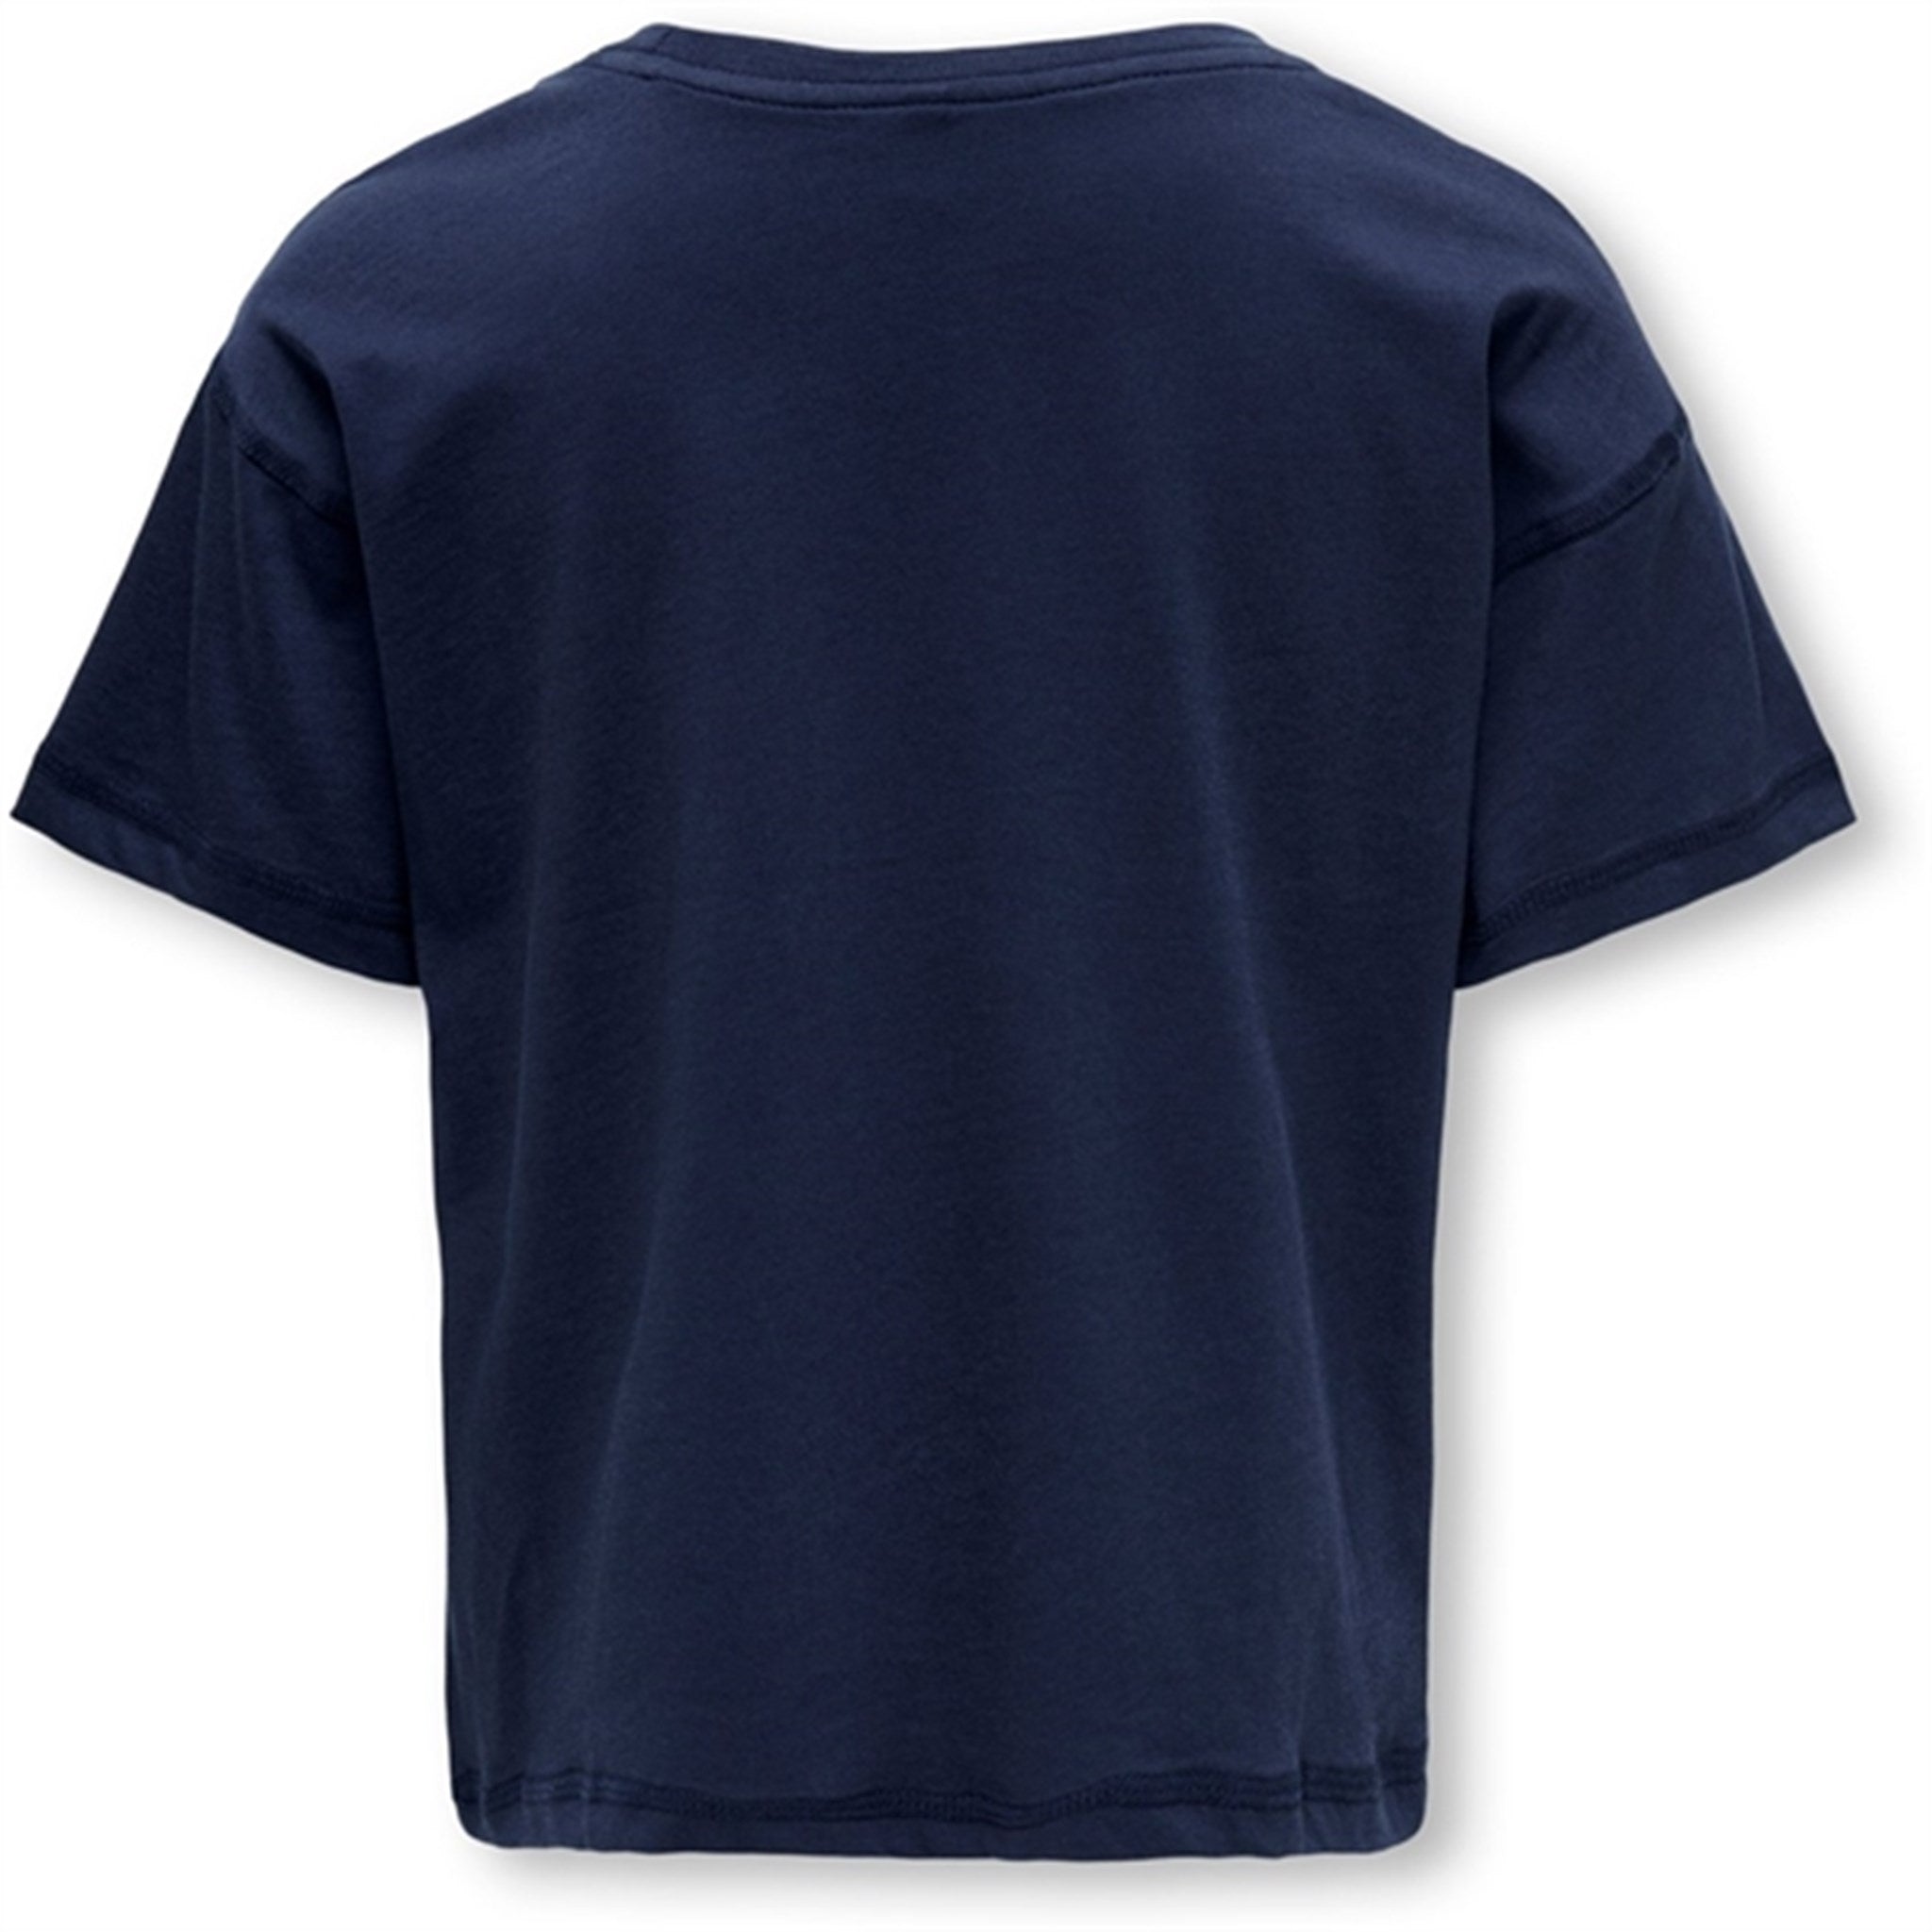 Kids ONLY Naval Academy Sinna Reguler France T-shirt 2